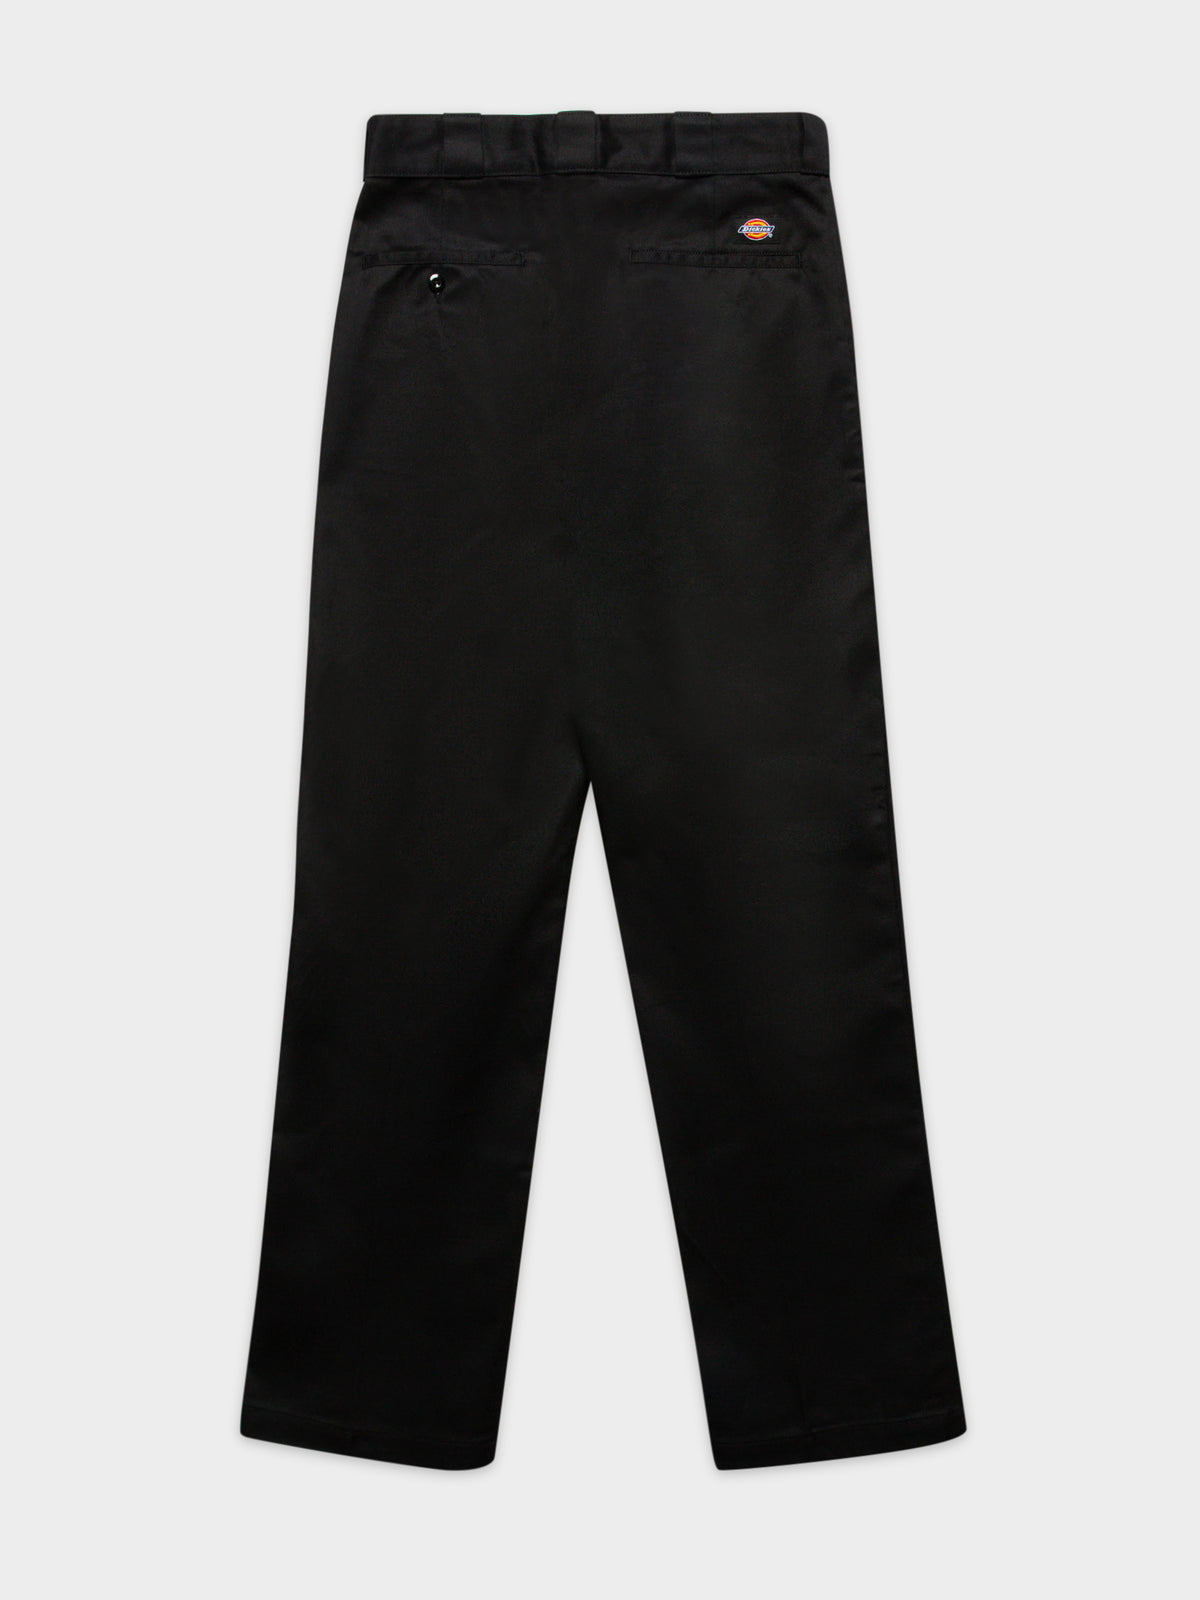 Original 874 Pants in Black